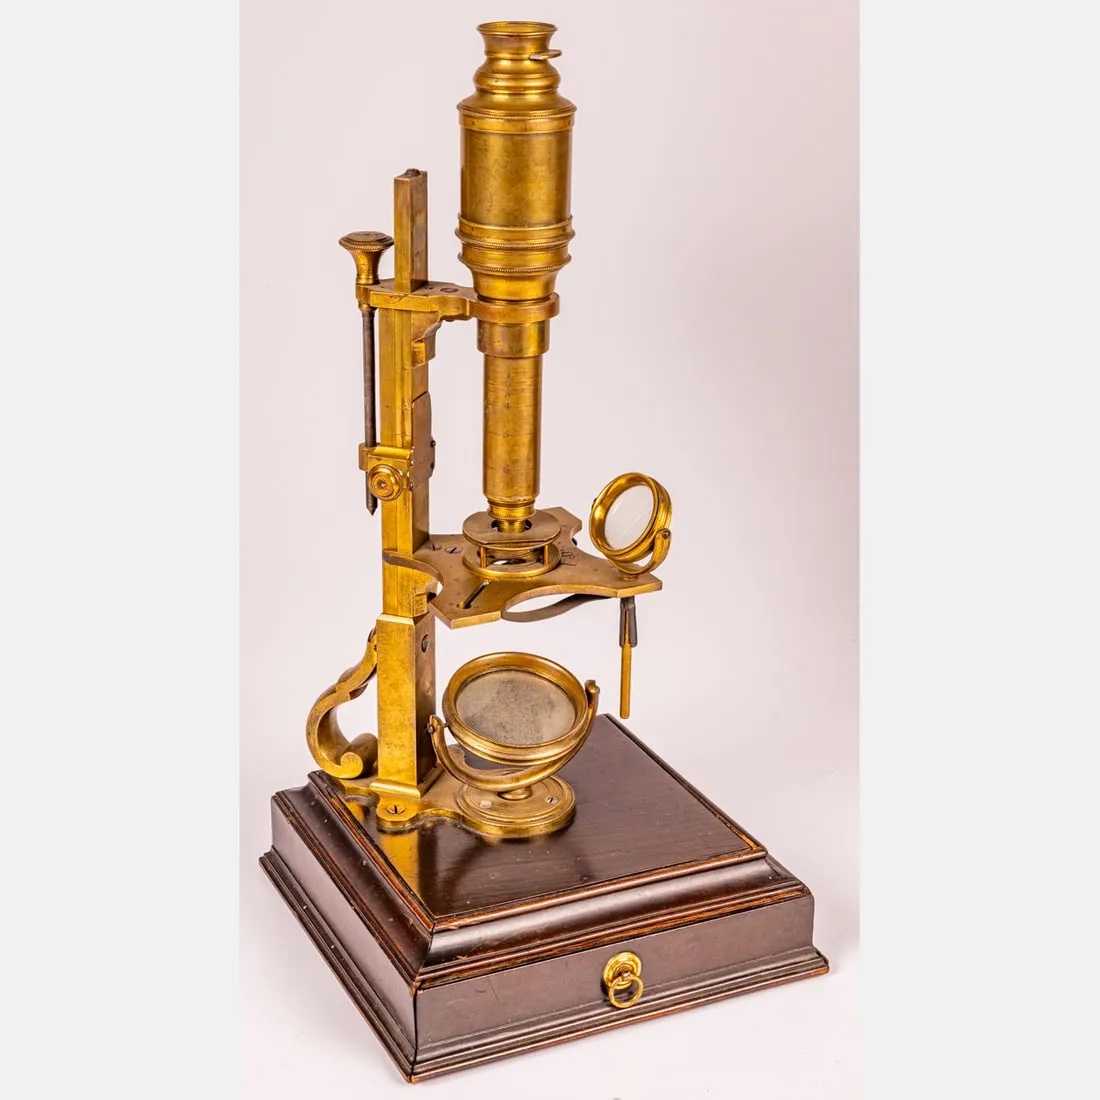 John Cuff Compound Microscope, estimated at $3,000-$5,000 at Gray's.